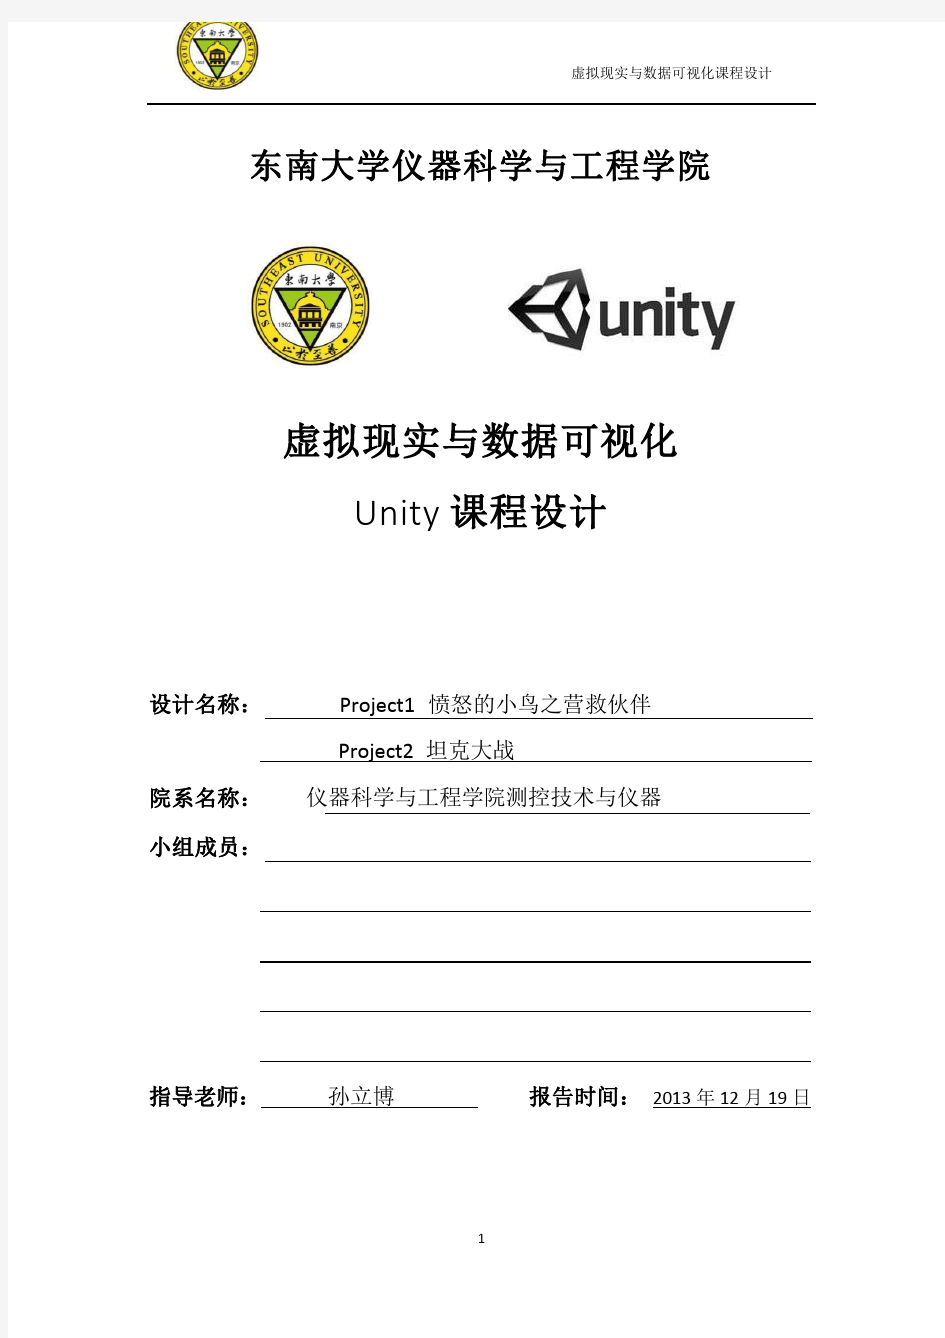 虚拟显示及数据可视化__Unity课程设计报告